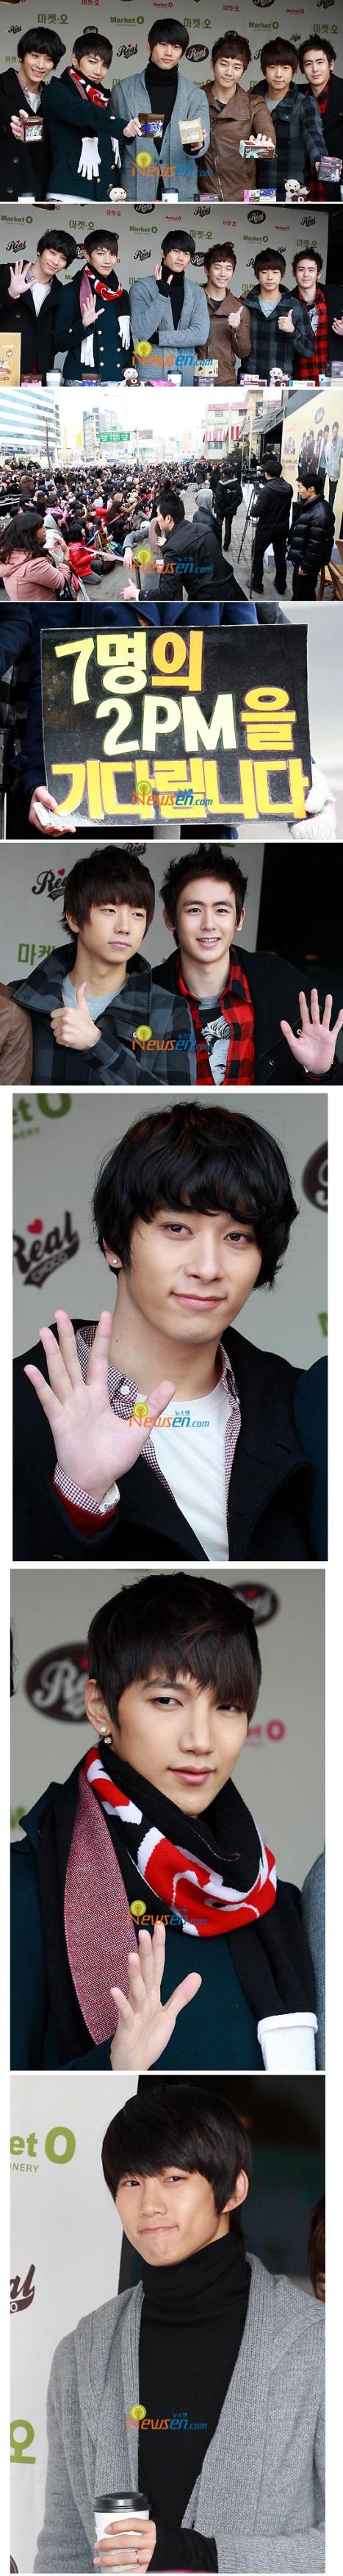 [100127][NEWS] 2PM auf Market O FanSign Event; Fans vermitteln die Nachricht '2PM is 7 members' 2pm_2